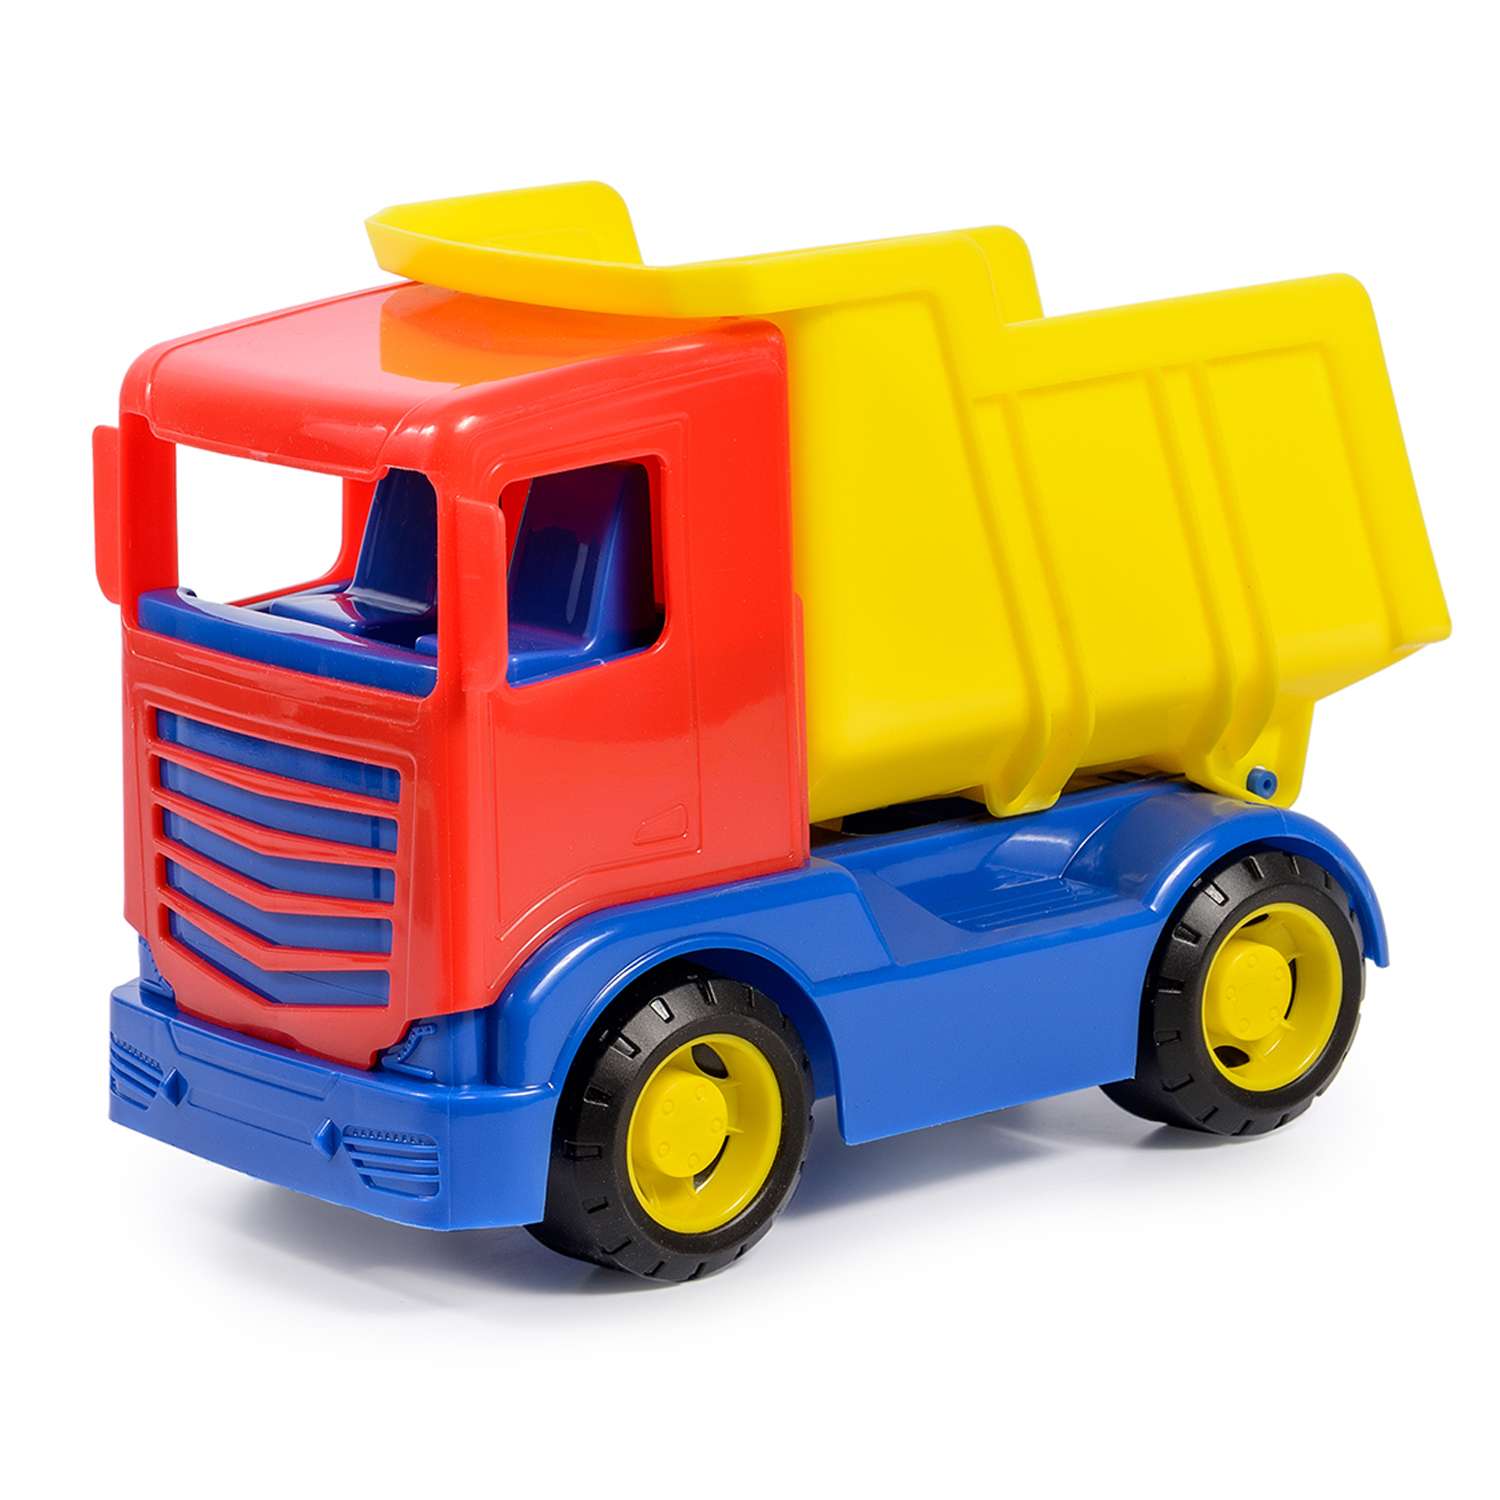 Детские грузовички. Автомобиль самосвал Green Plast гр08. Автомобиль грузовой оранж Green Plast гр07. Автопарк "самосвал малый" 7009. Детский грузовик.